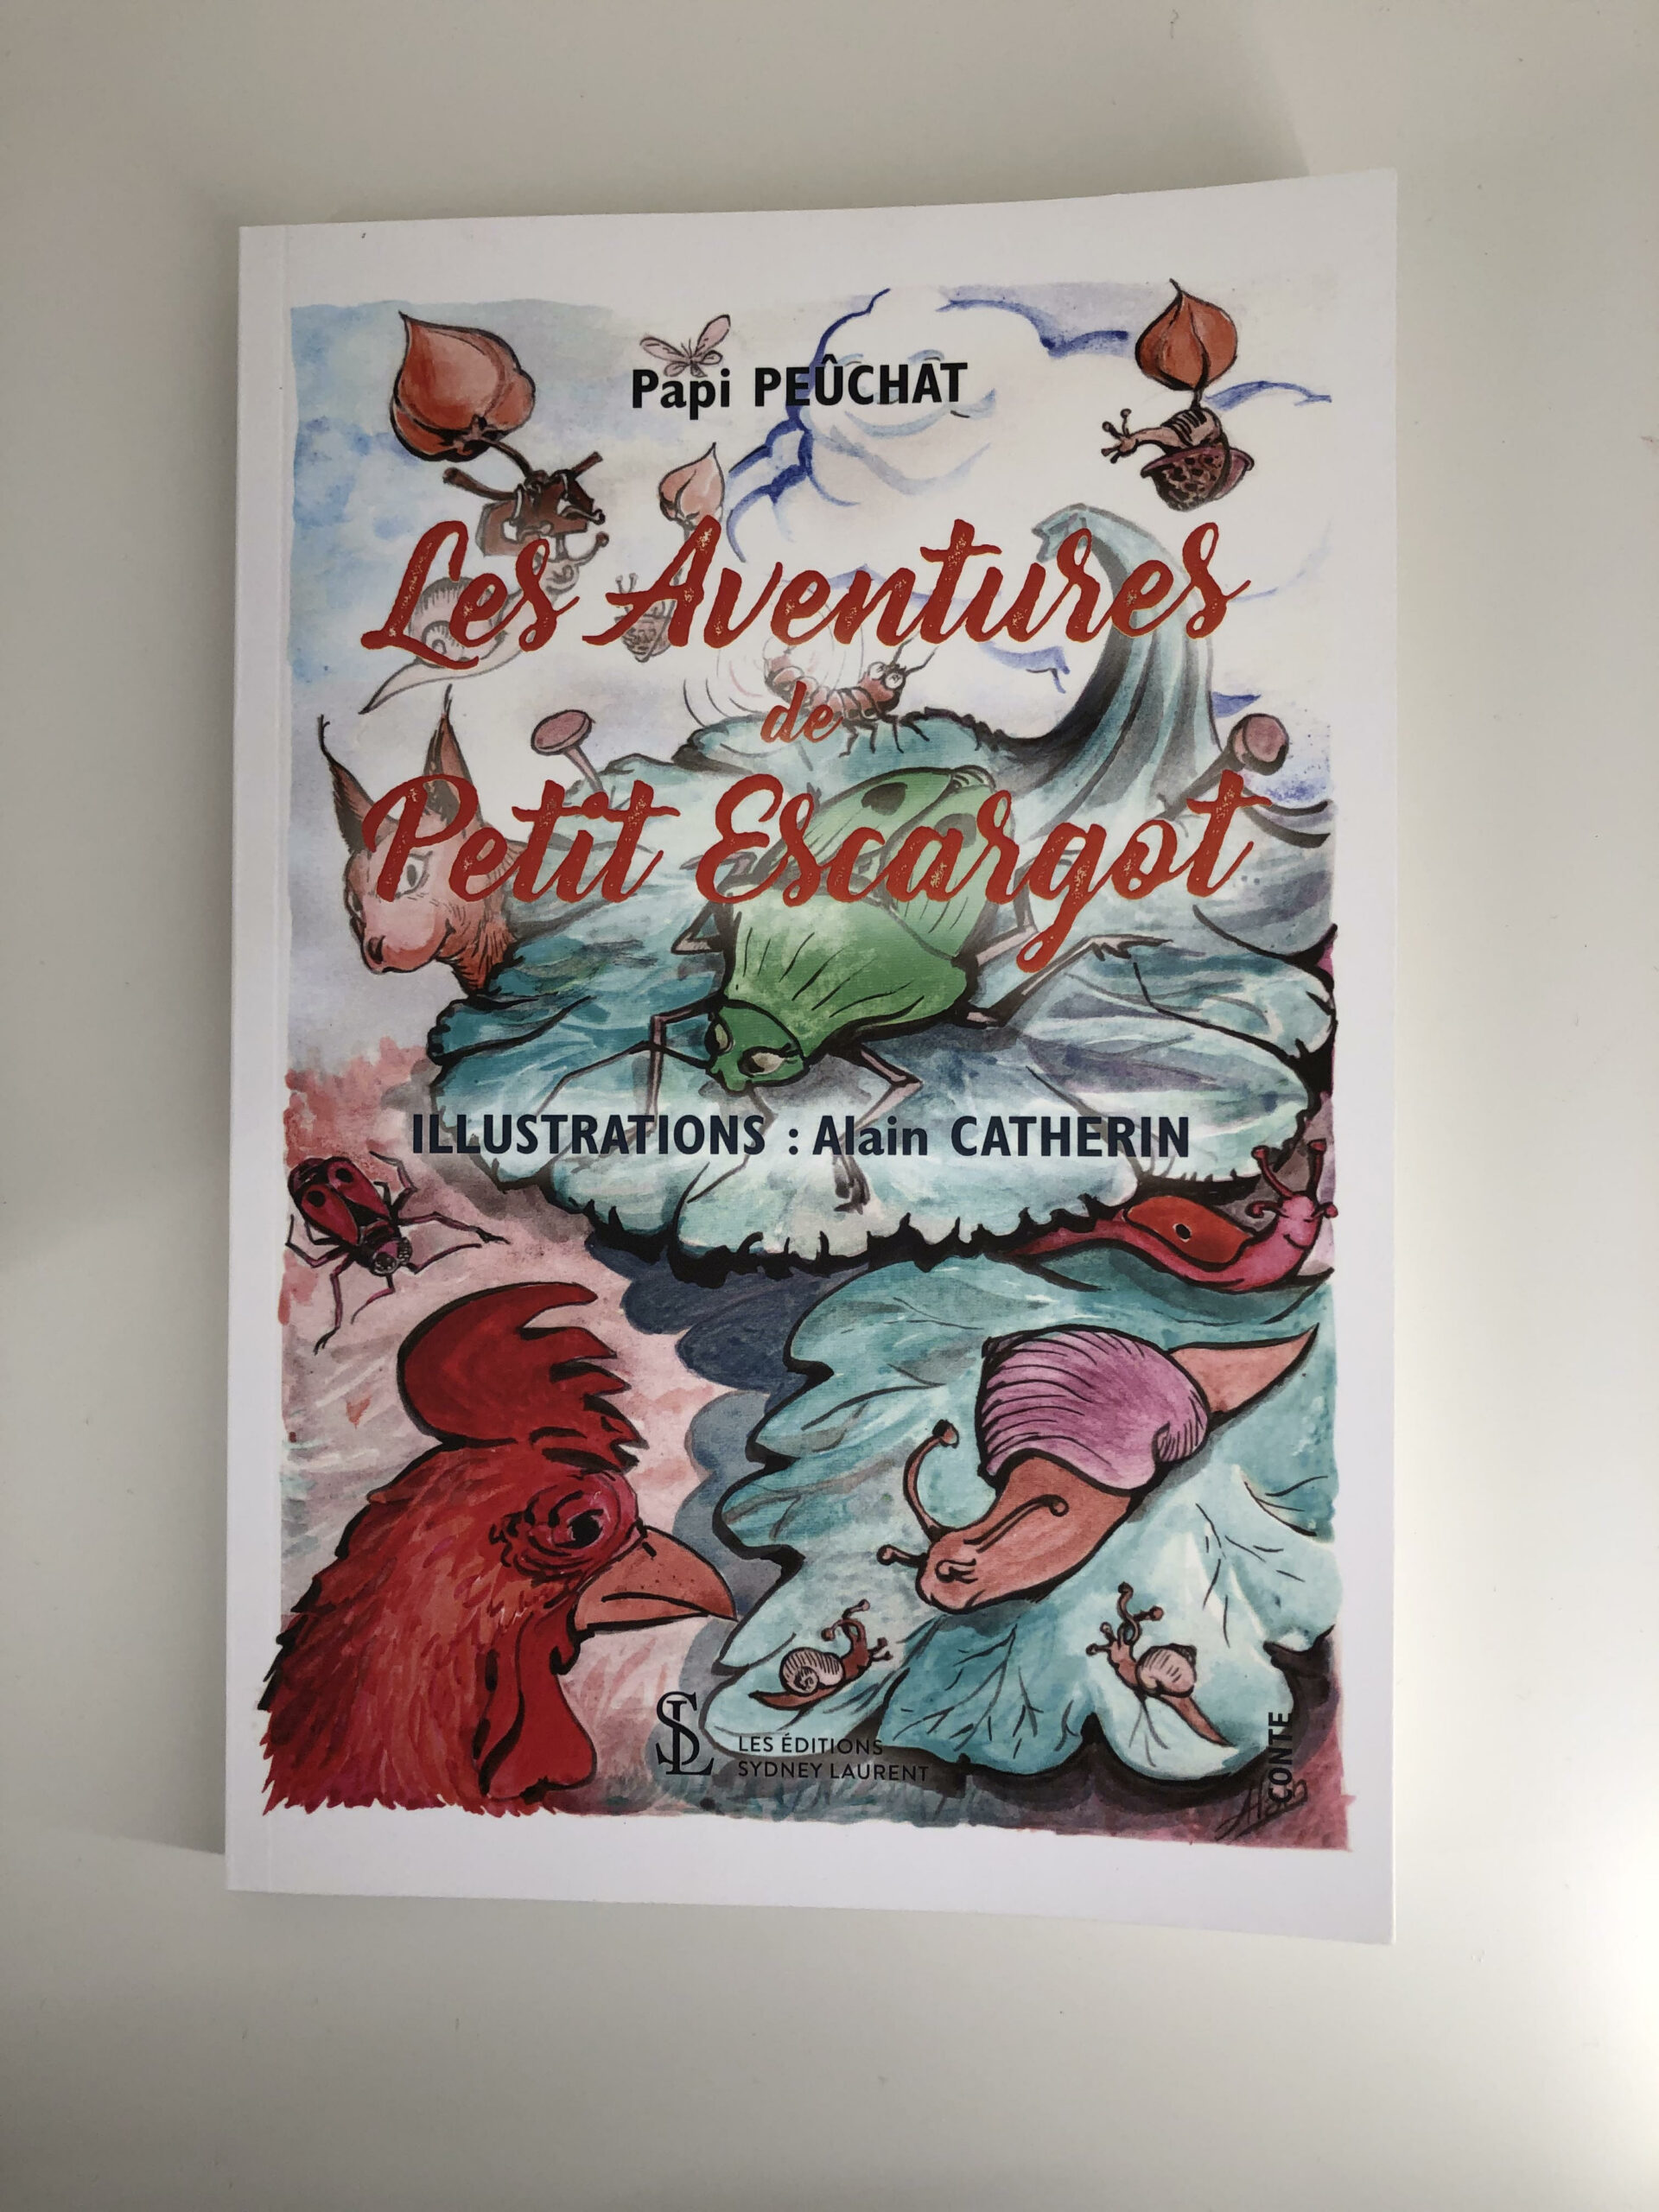 Livre « Les aventures de petit escargot » de Papi Pechat